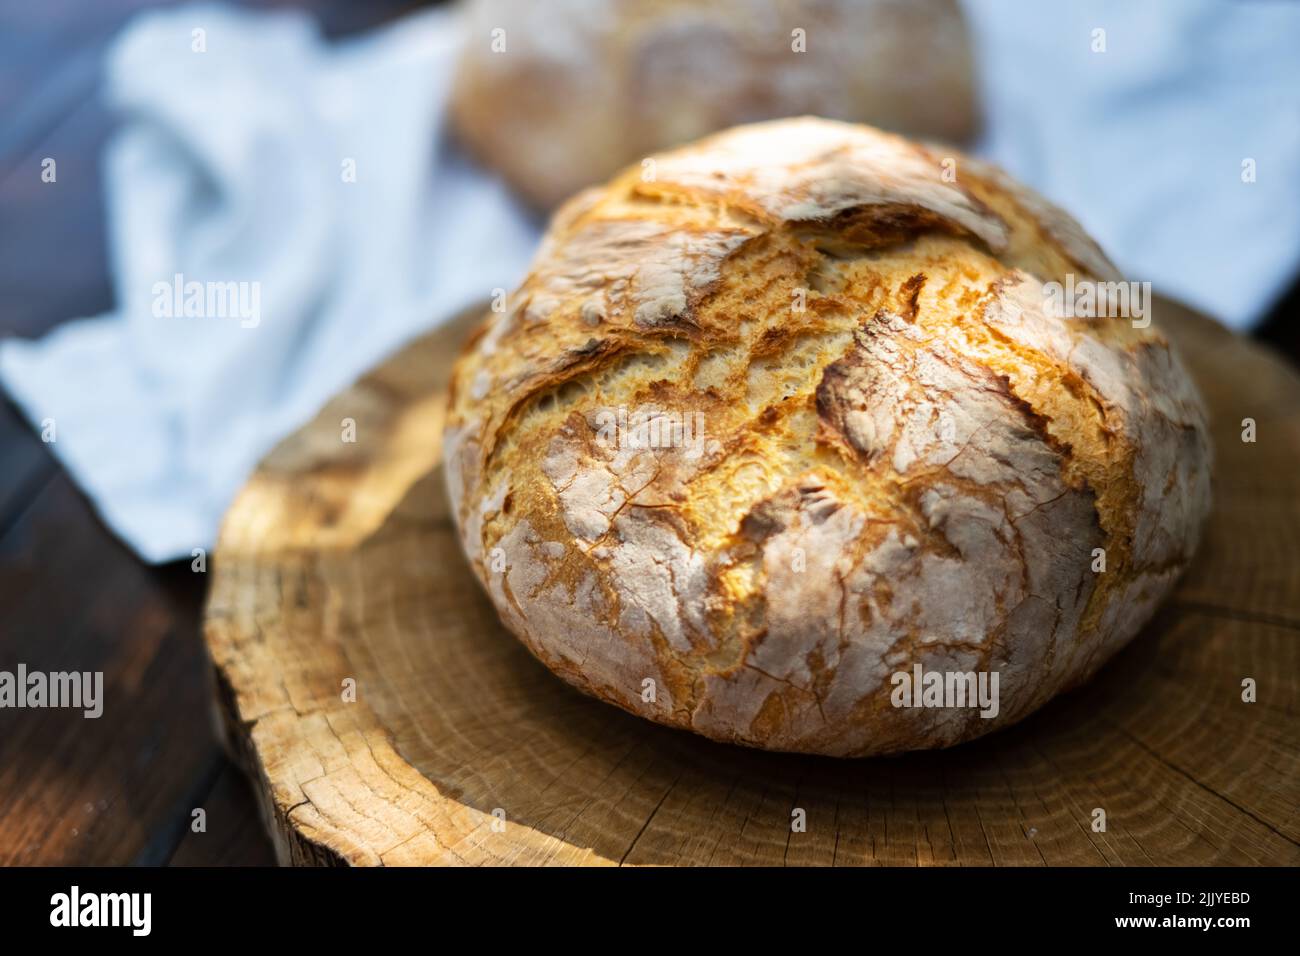 Pan de masa fermentada tradicional con piel de regadura en una mesa rústica de madera. Fotografía de alimentos saludables Foto de stock